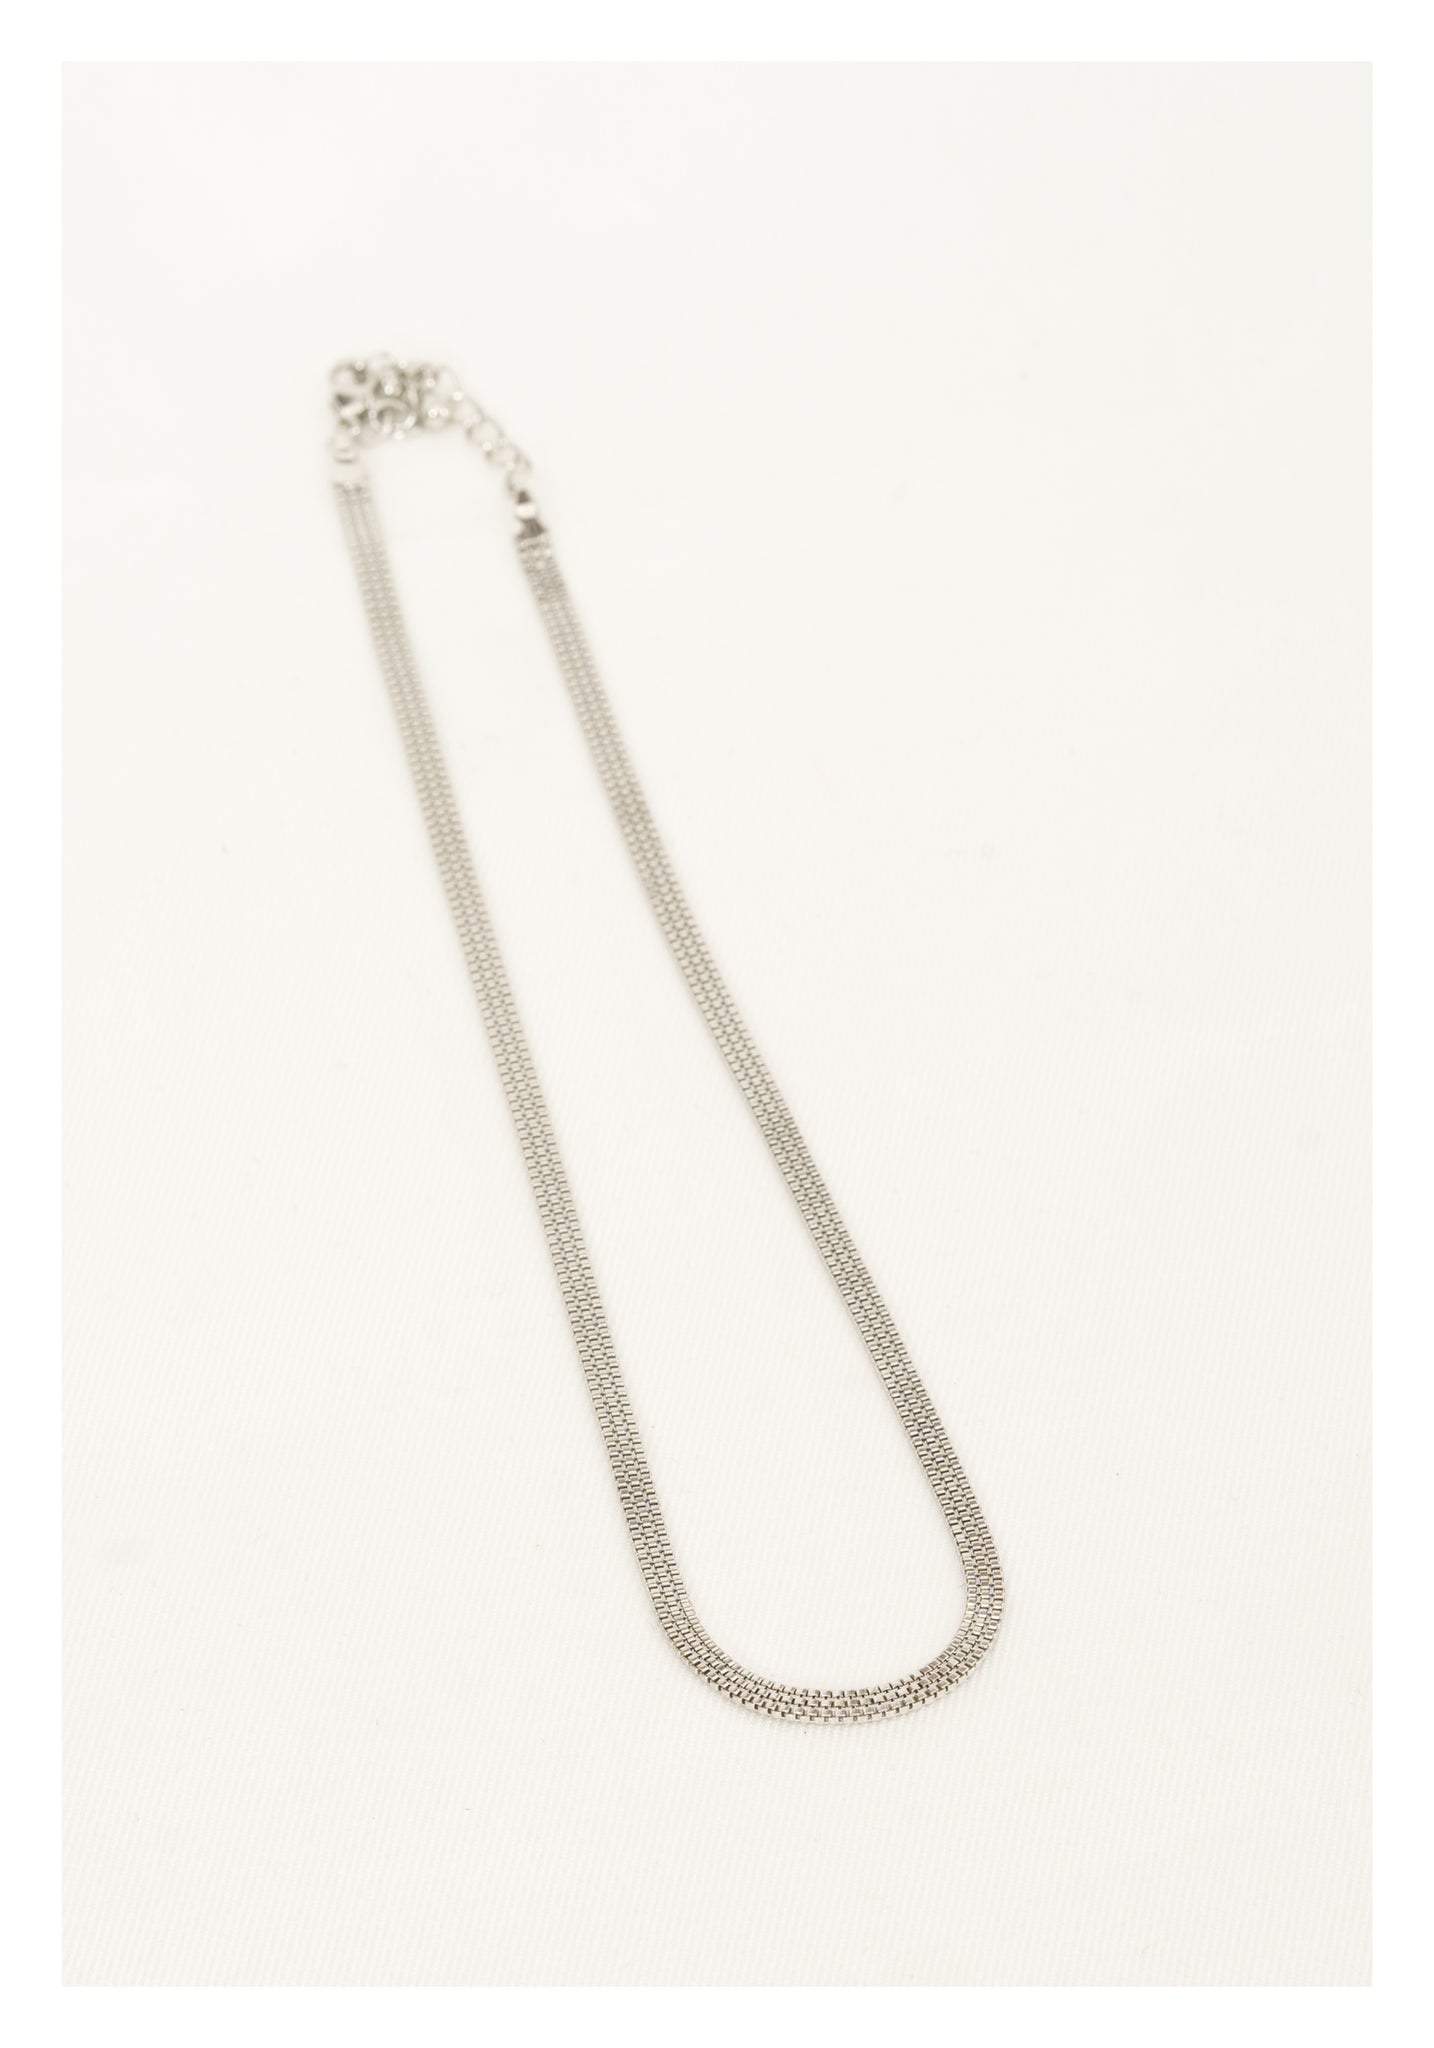 Square Chain Flat Necklace Silver - whoami